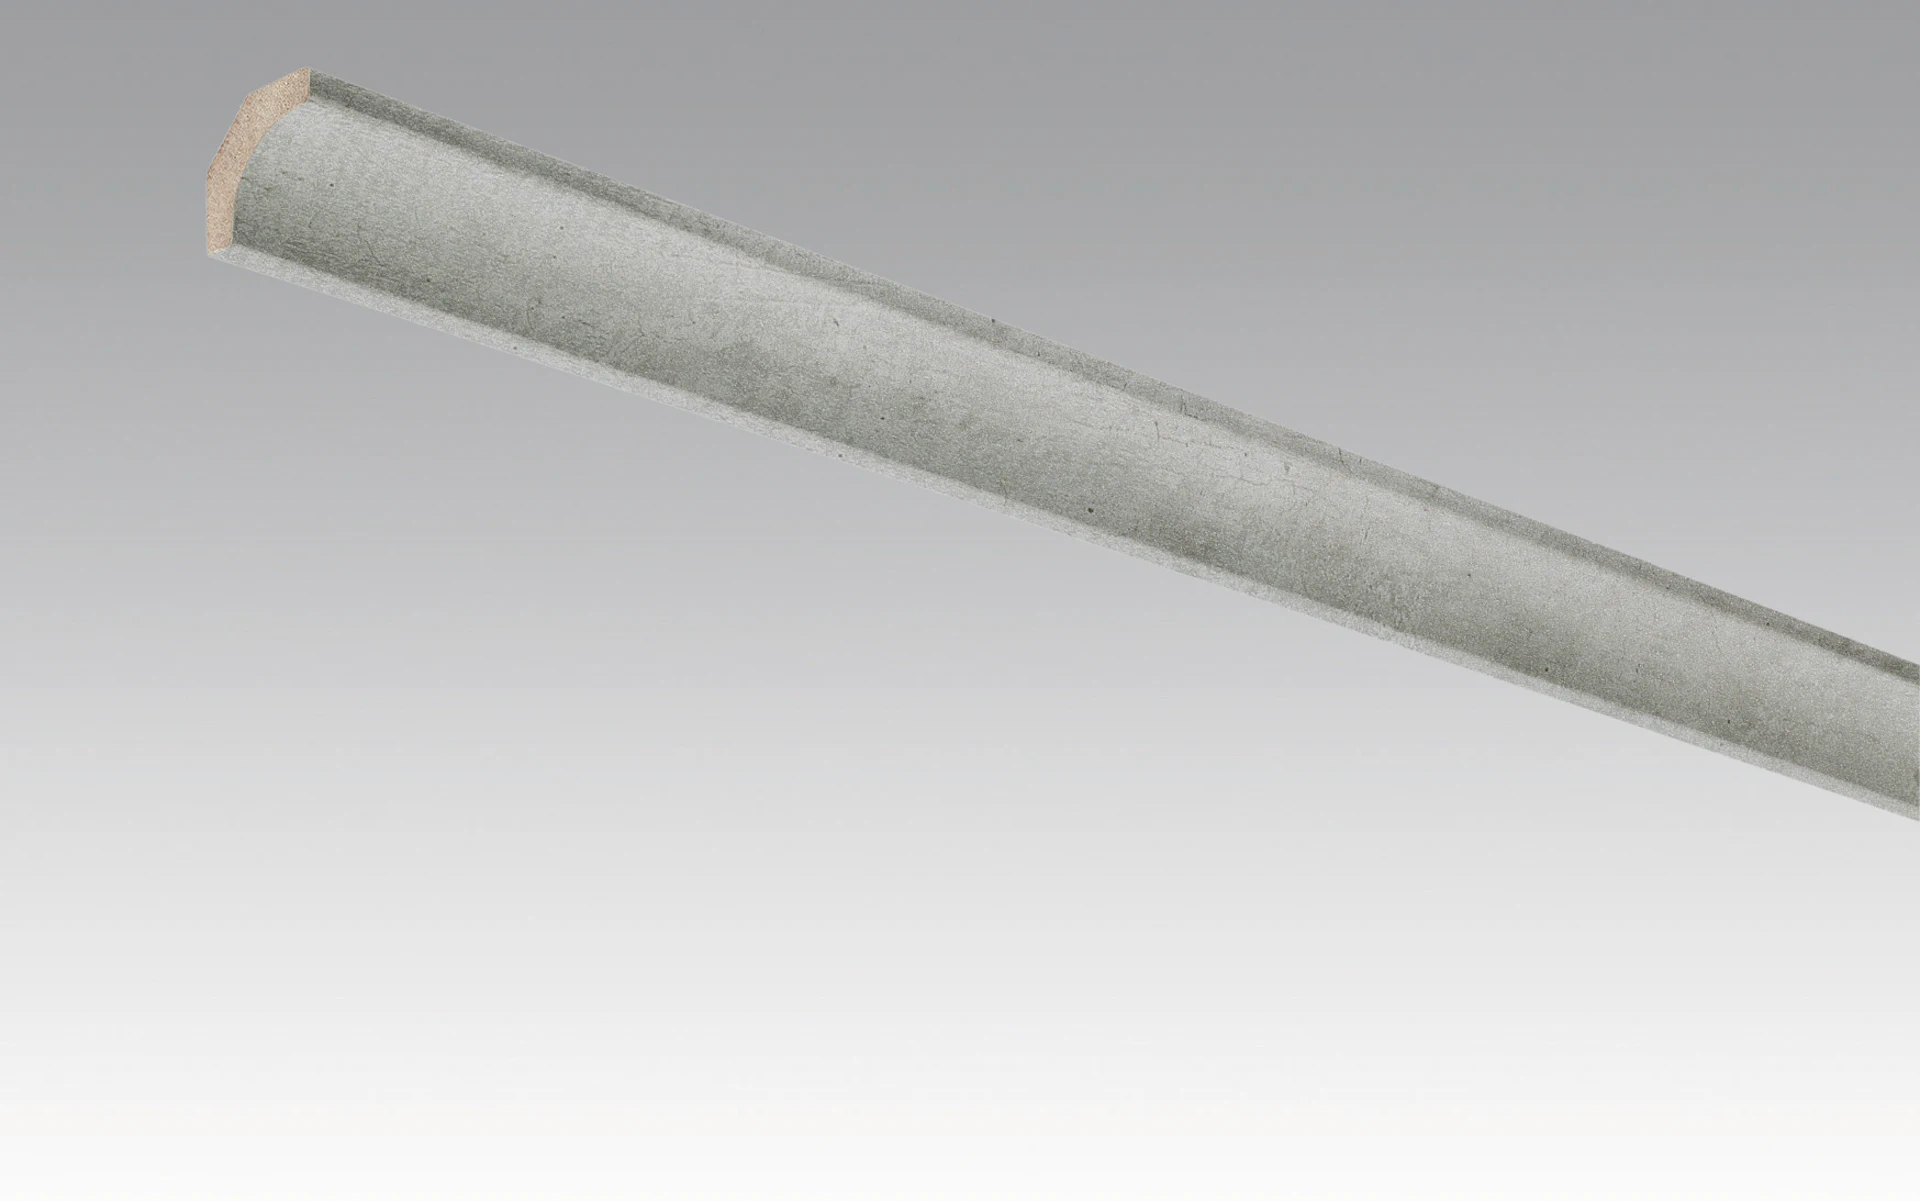 Battiscopa MEISTER cemento armato 4045 - 2380 x 22 x 22 mm (200034-2380-04045)